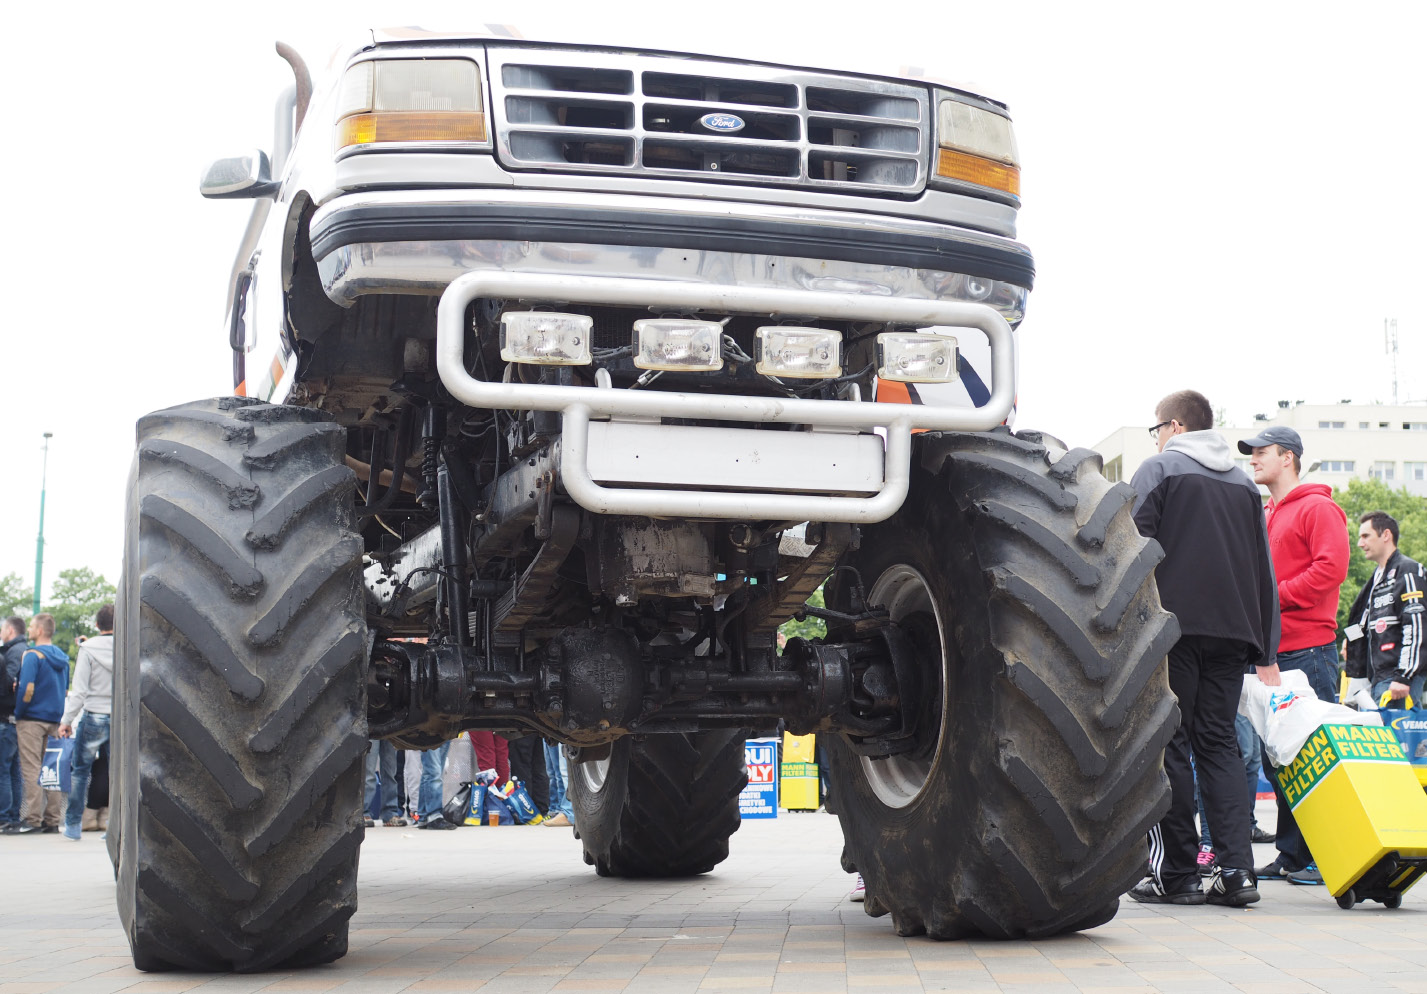  Monster truck najpierw pozował do zdjęć, a później zajął się pokazowym miażdżeniem wraków